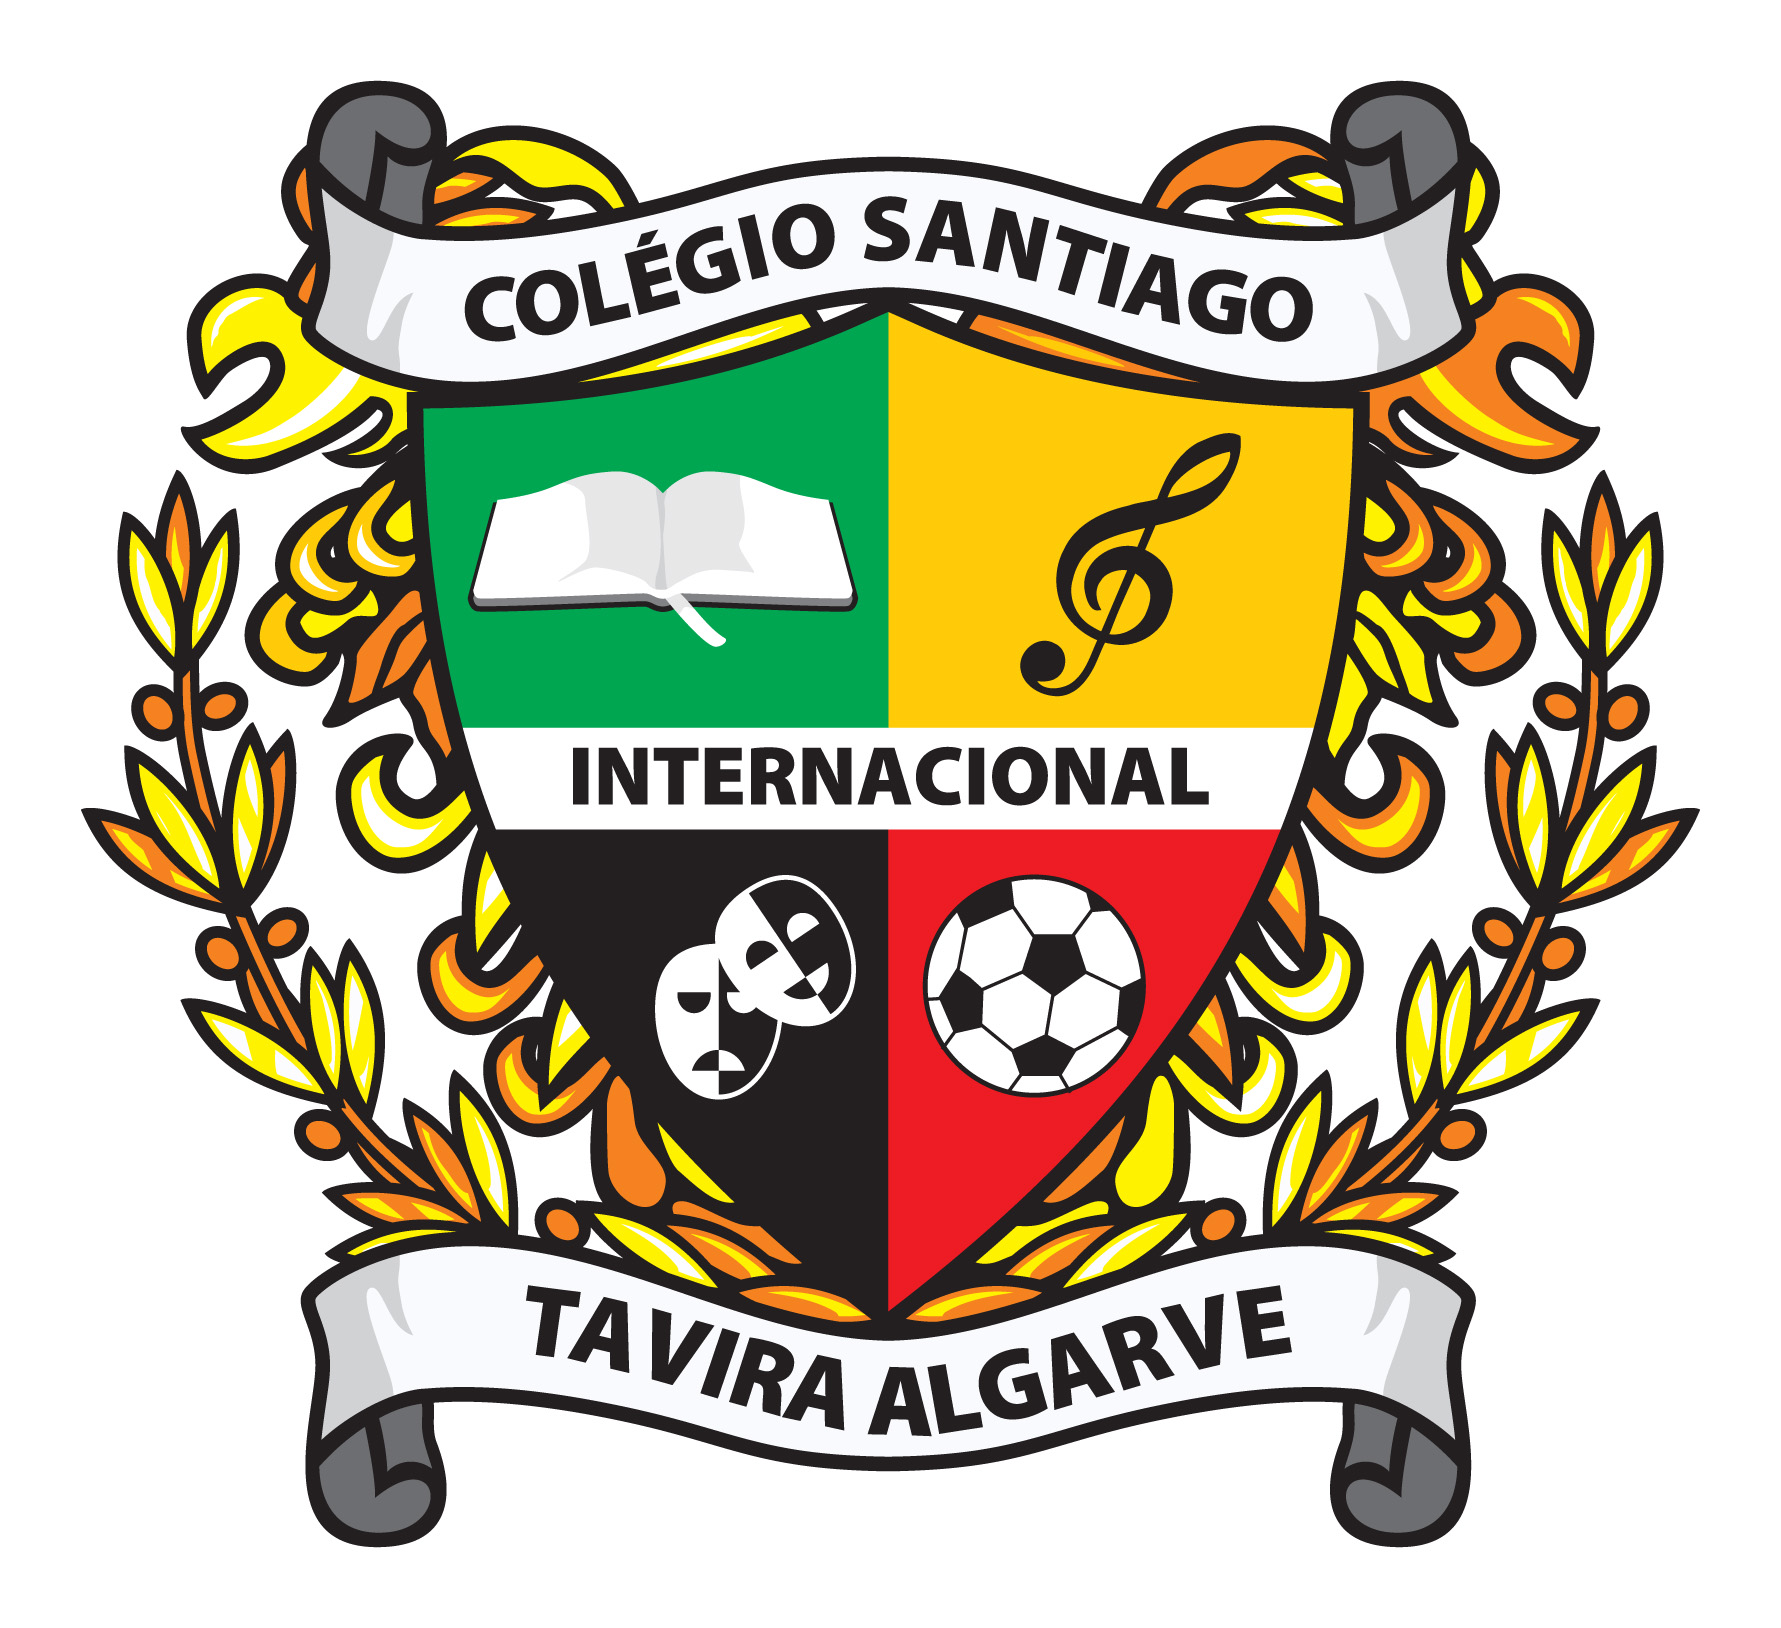 Colgio de Santiago Internacional Tavira